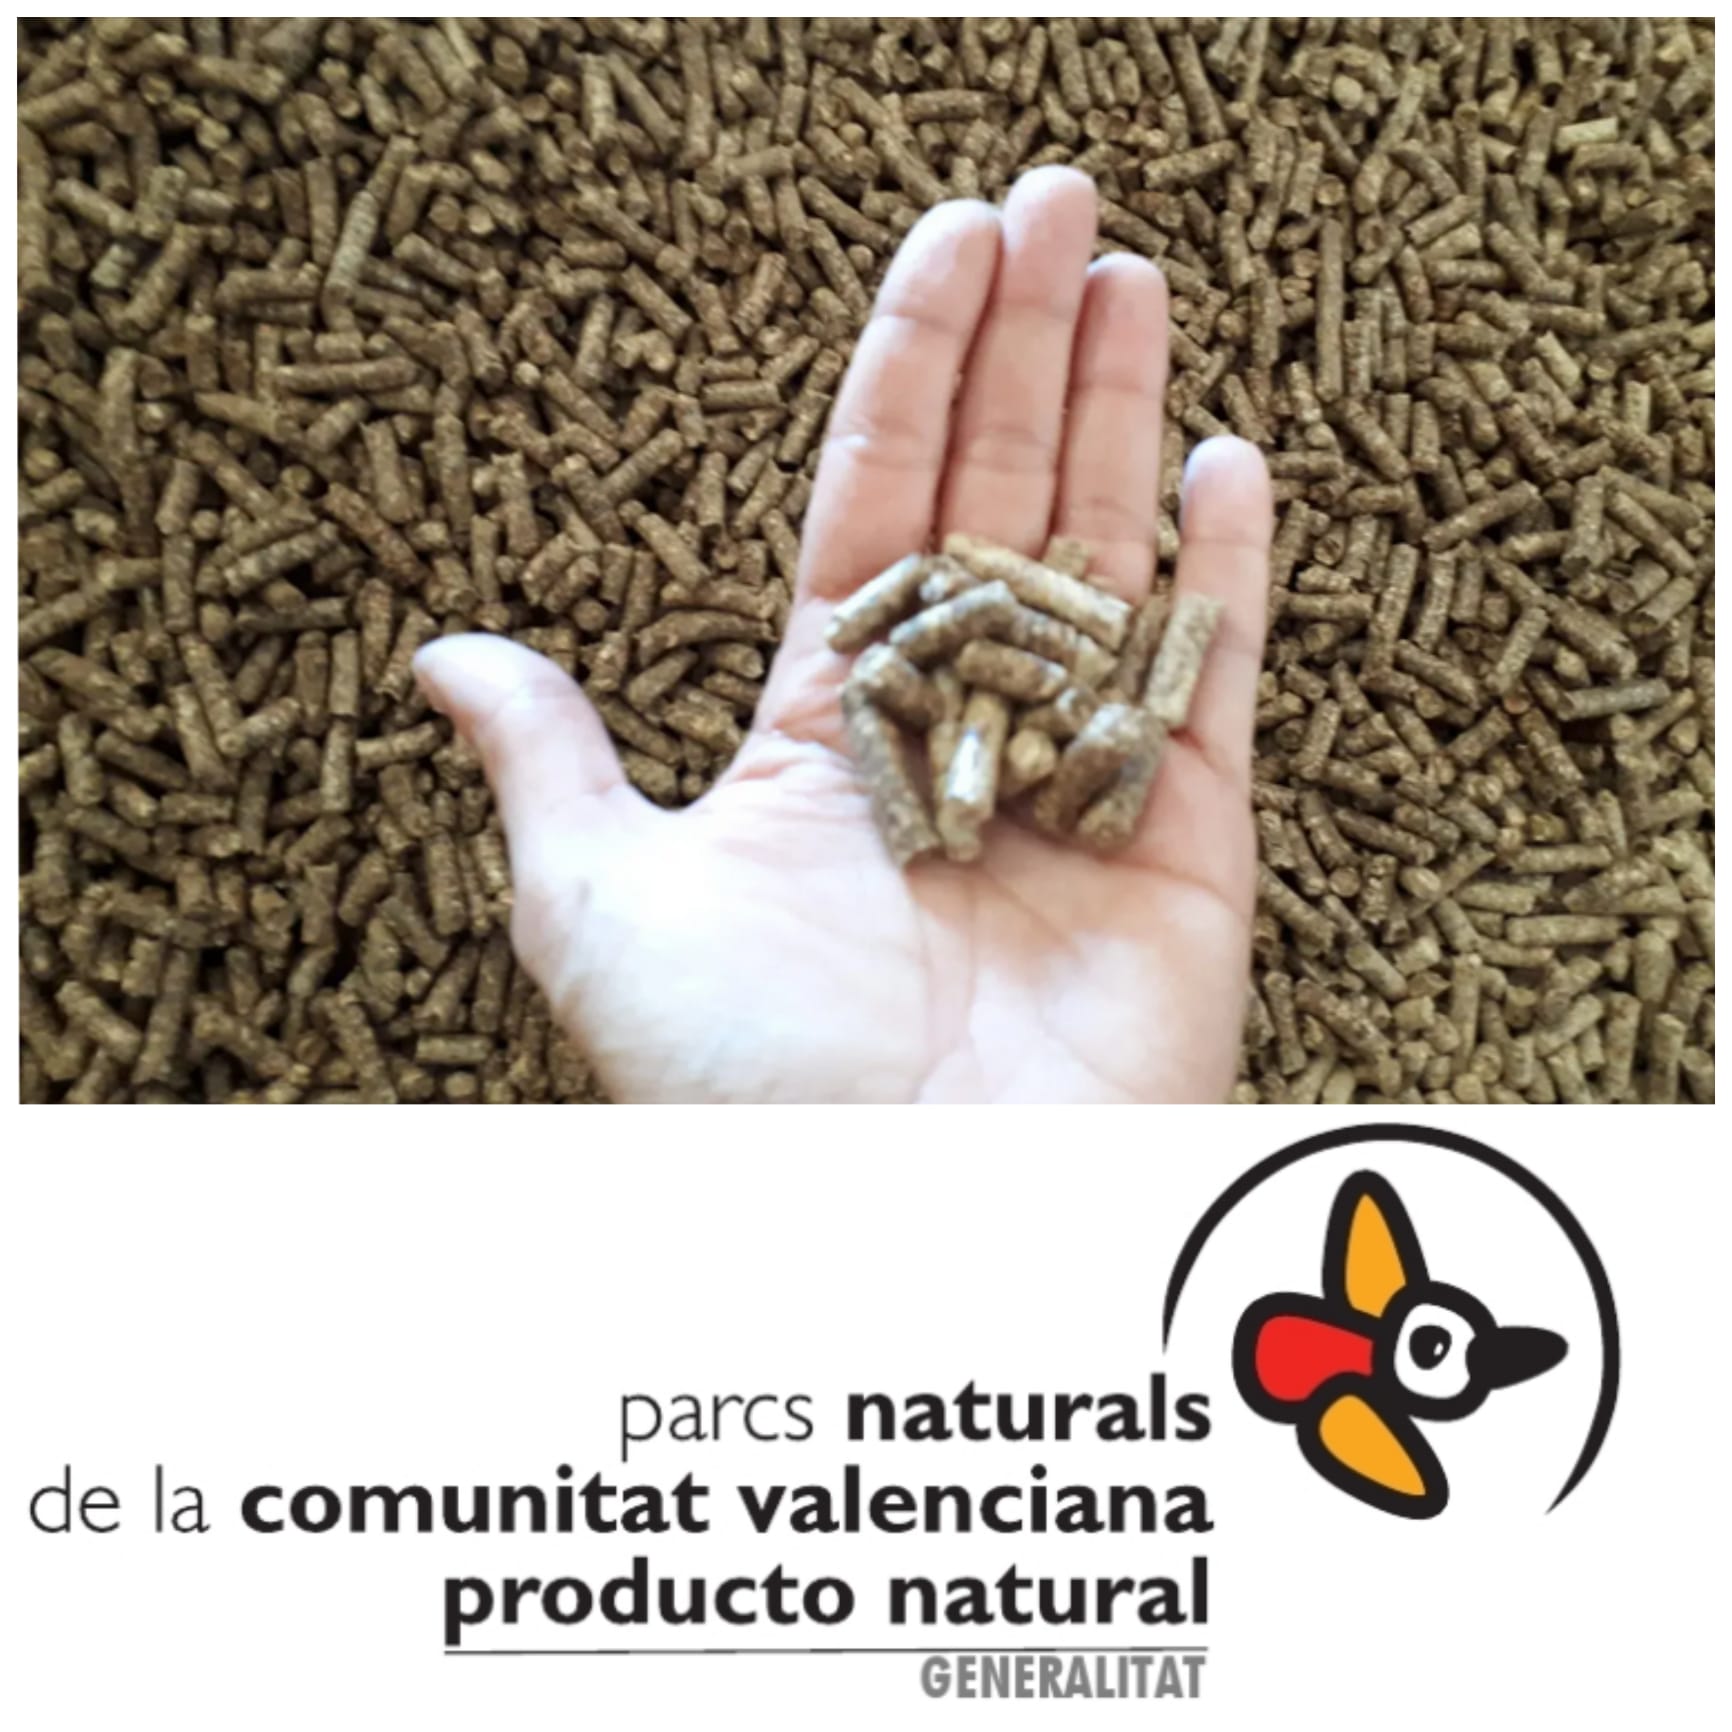 You are currently viewing El pèl·let de Serra aconsegueix la marca Parc Natural